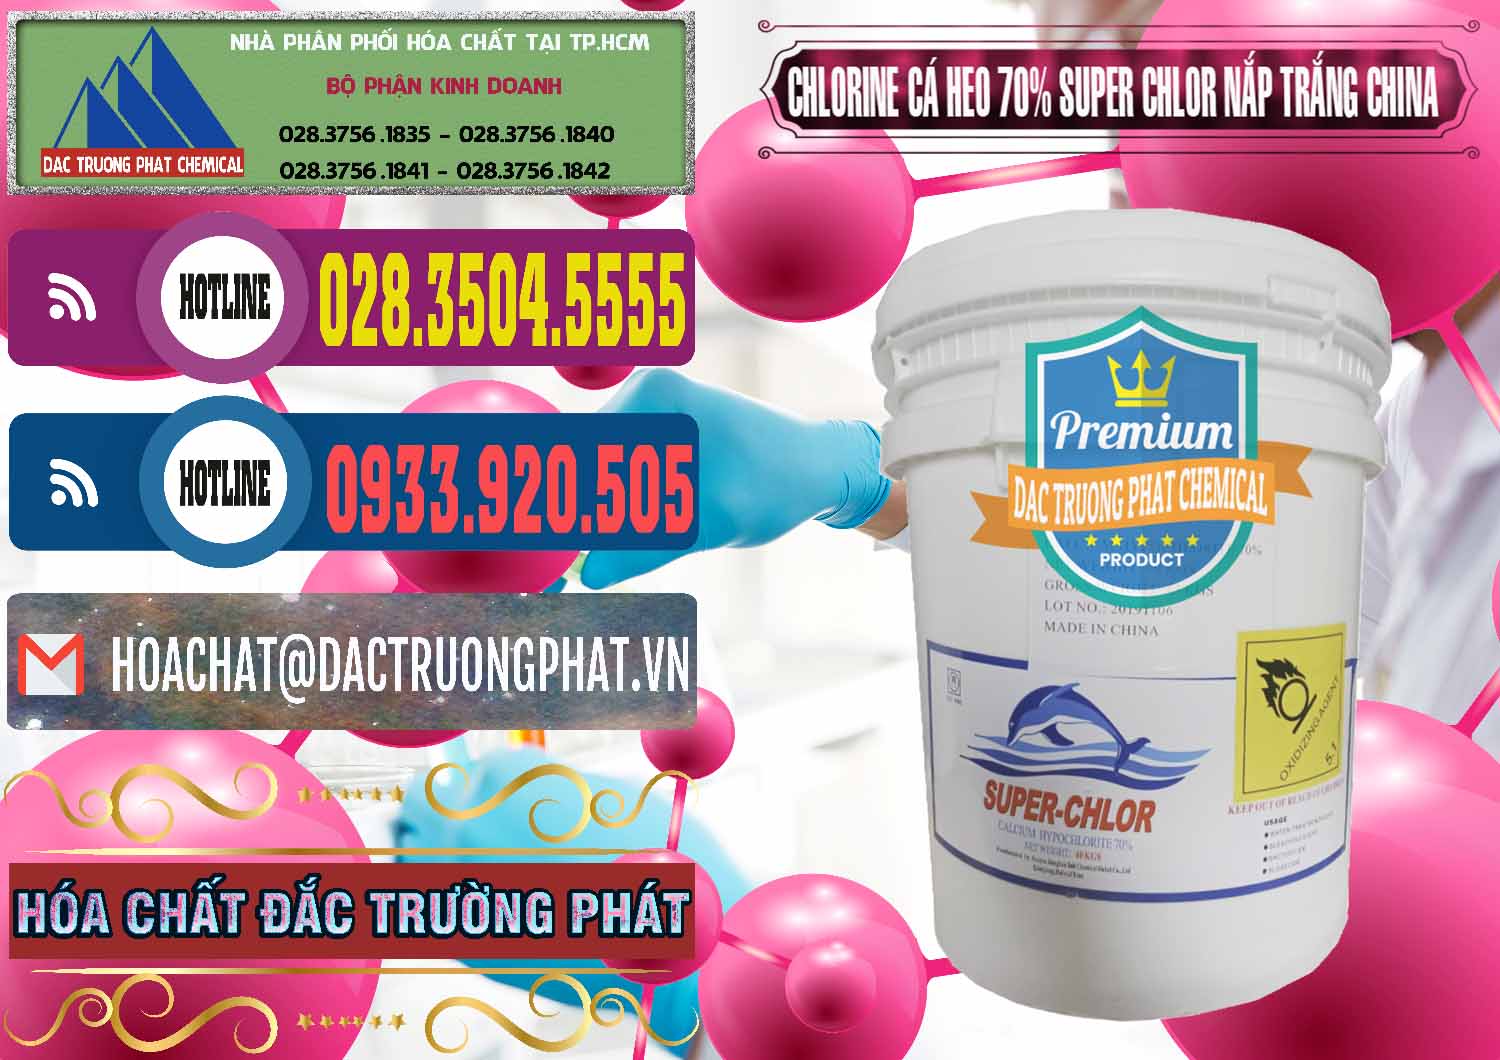 Nơi chuyên bán _ cung ứng Clorin - Chlorine Cá Heo 70% Super Chlor Nắp Trắng Trung Quốc China - 0240 - Đơn vị kinh doanh & phân phối hóa chất tại TP.HCM - muabanhoachat.com.vn